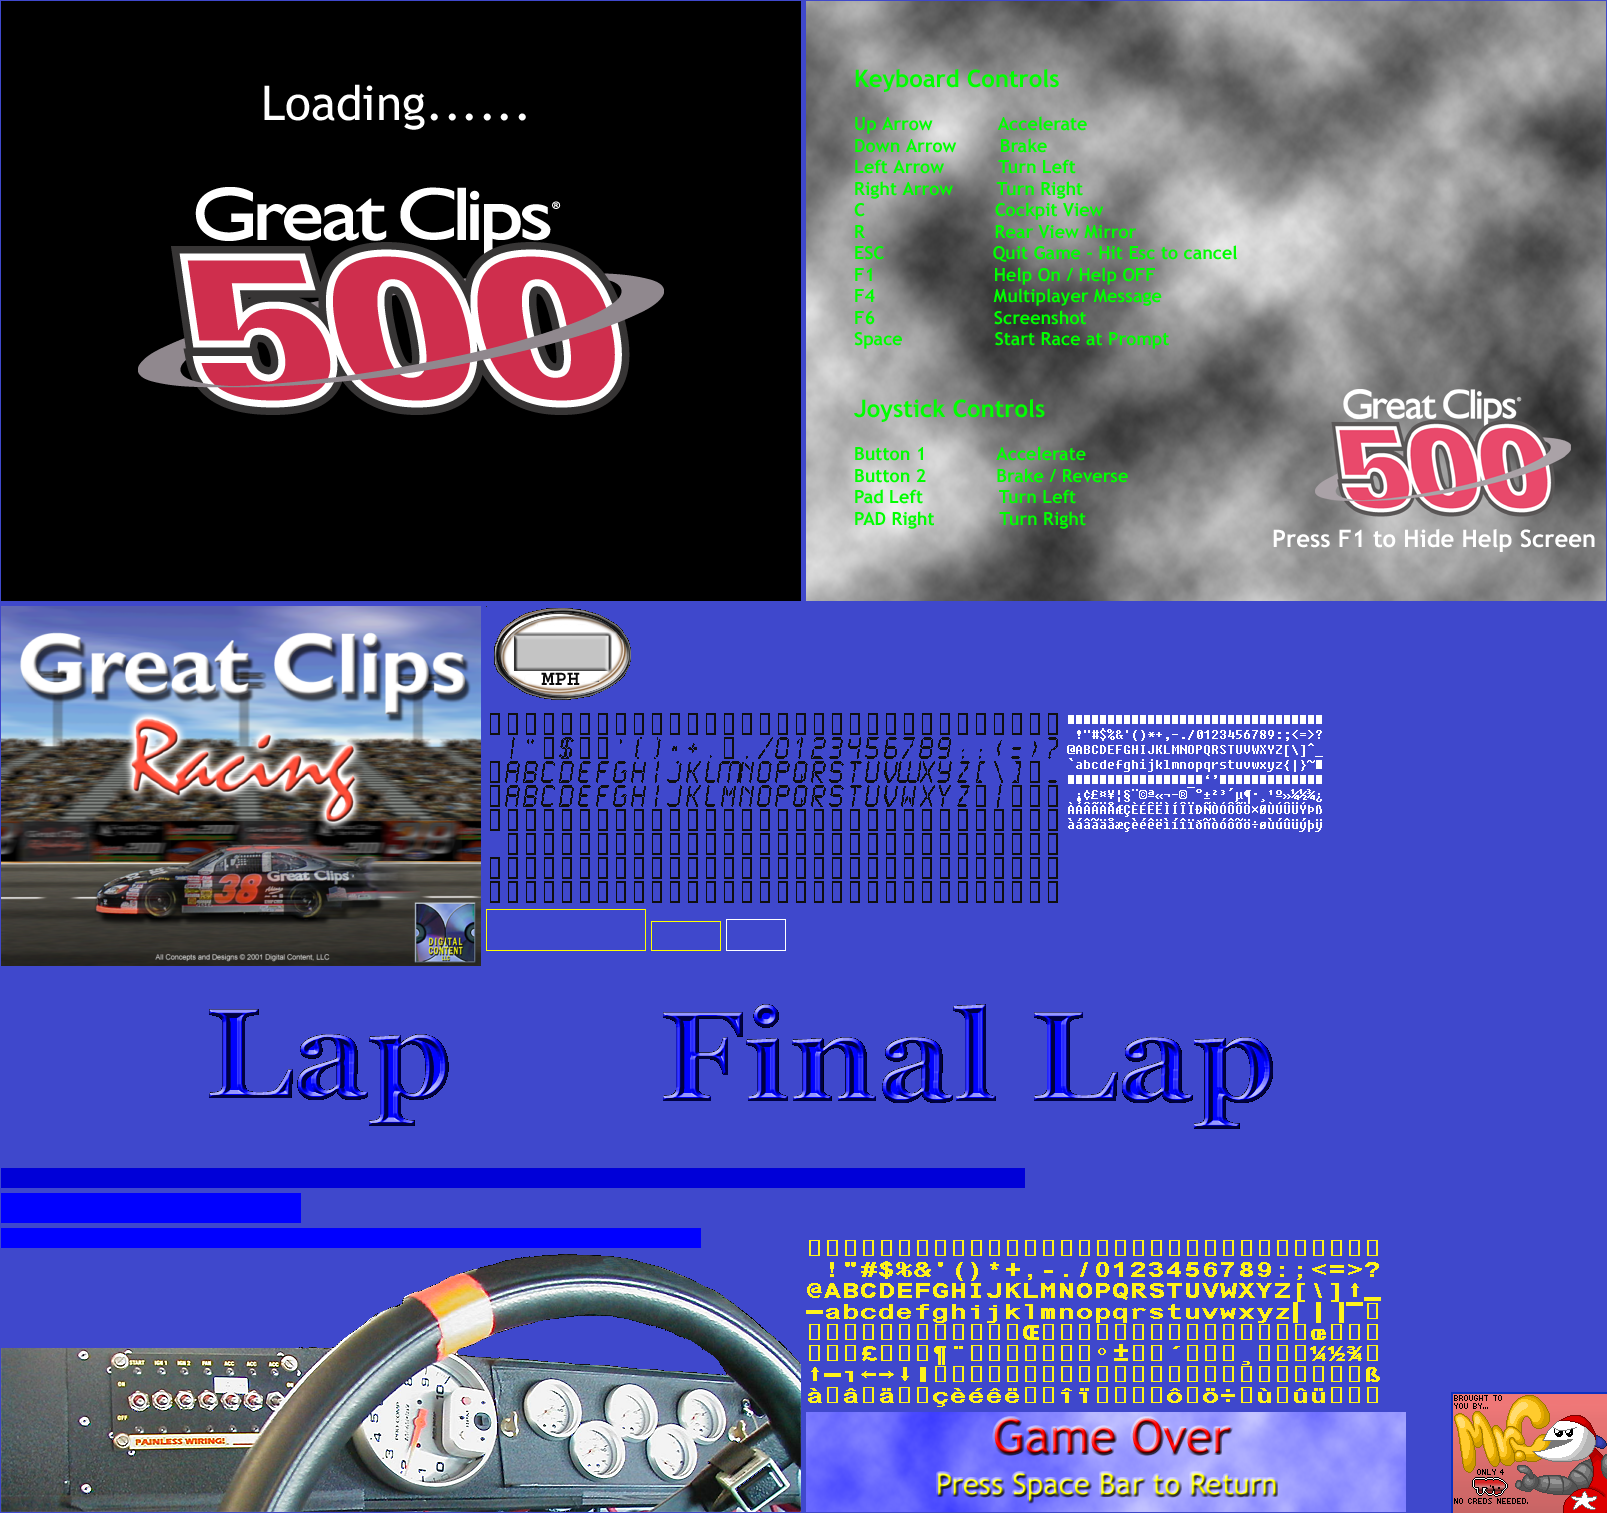 Great Clips 500 - Race GUI